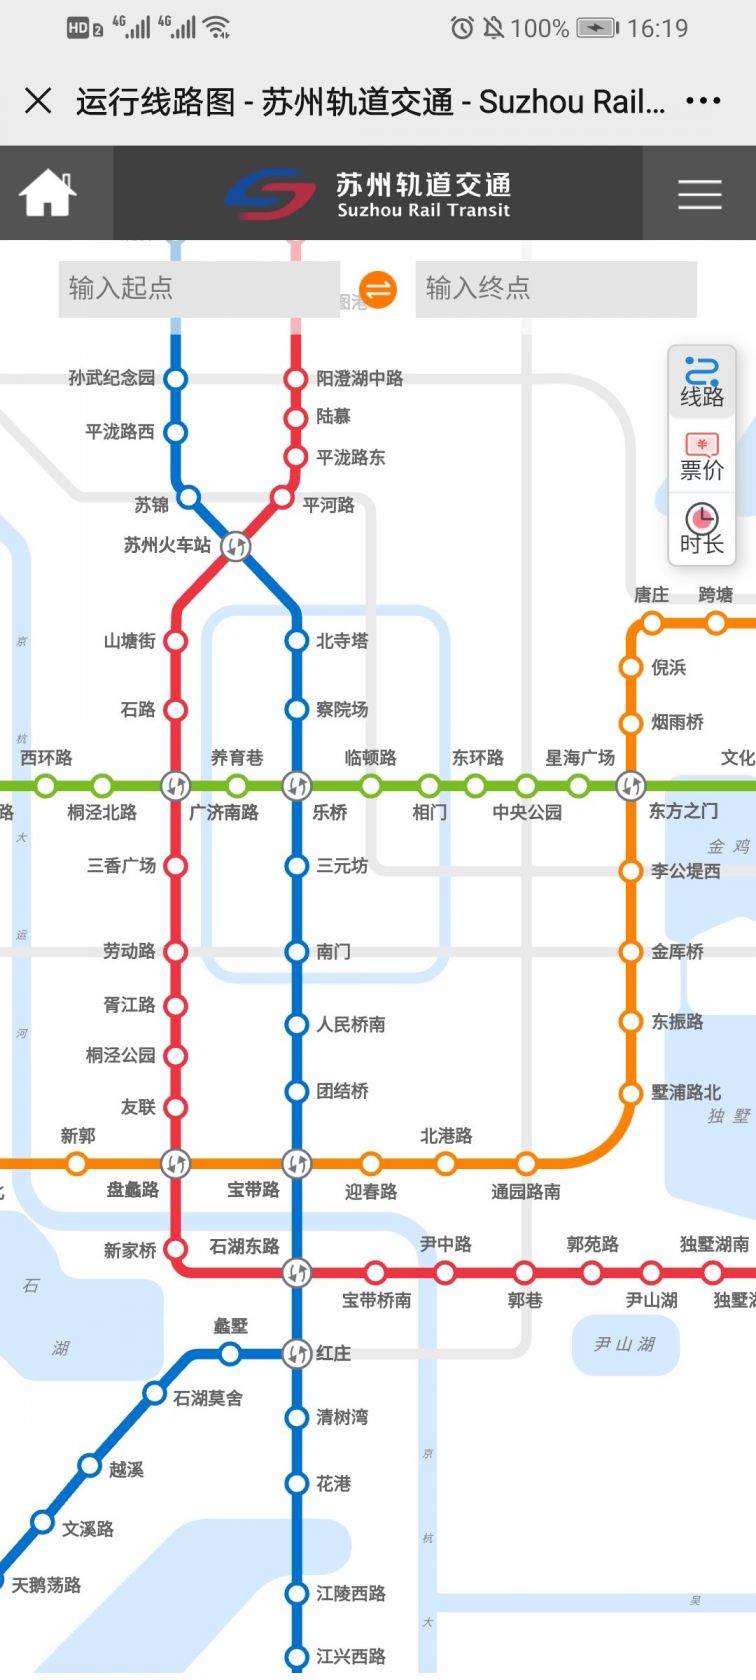 地铁线路图规划图查询流程   第一步:微信搜索 "苏州轨道交通"公众号